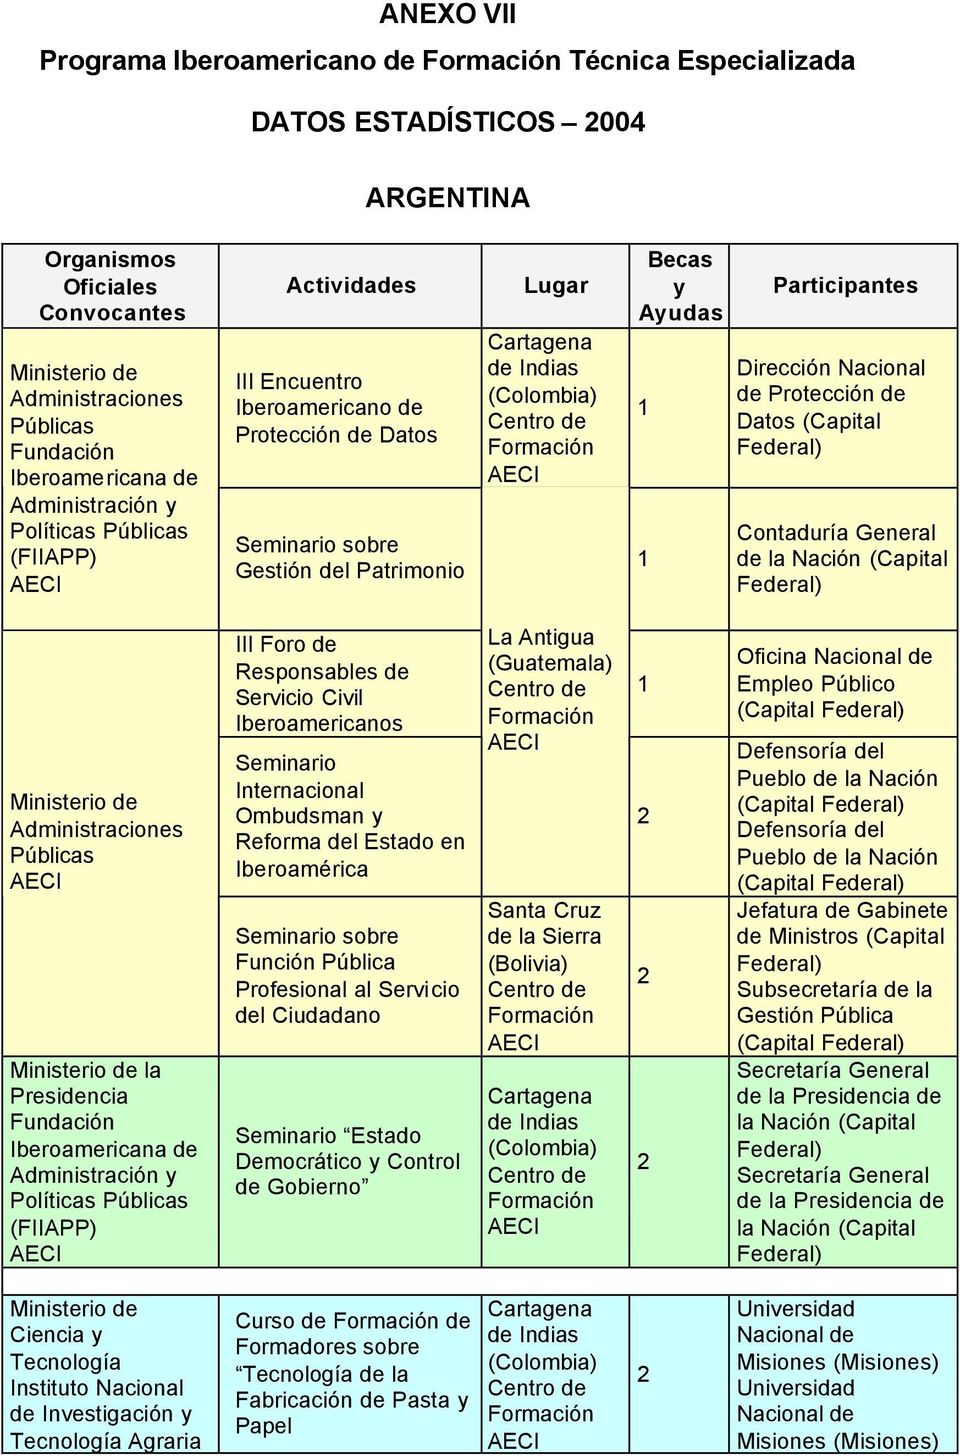 (Capital Contaduría General de la Administraciones Públicas la Presidencia Fundación Iberoamericana de Administración y Políticas Públicas (FIIAPP) III Foro de Responsables de Servicio Civil